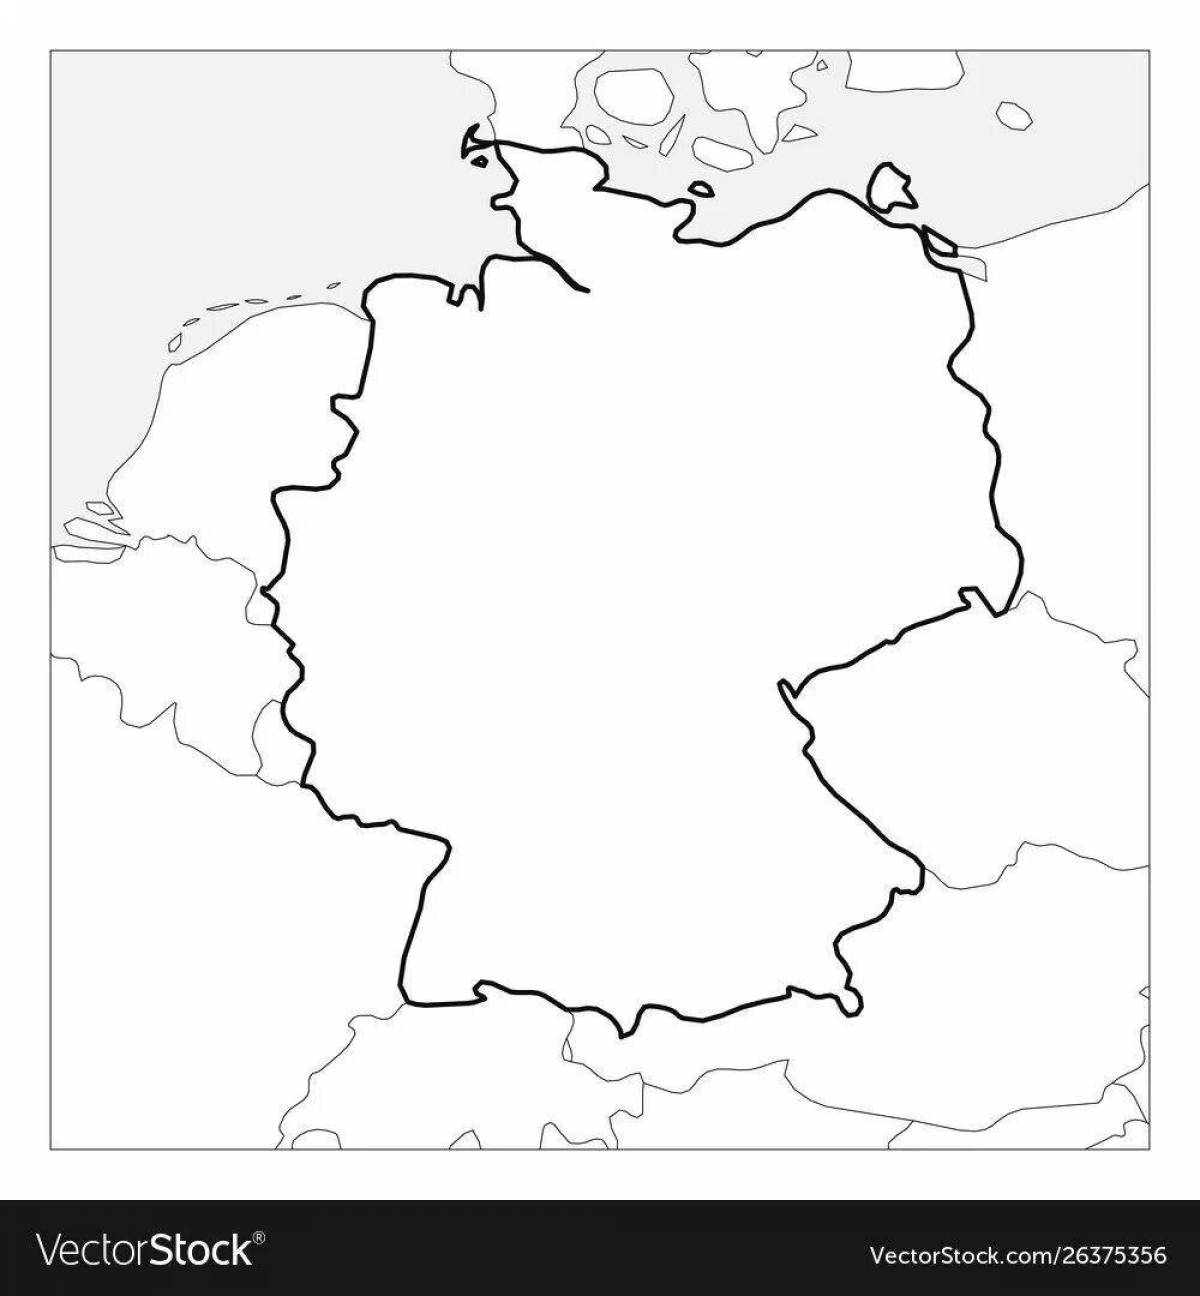 Раскраска яркая карта германии